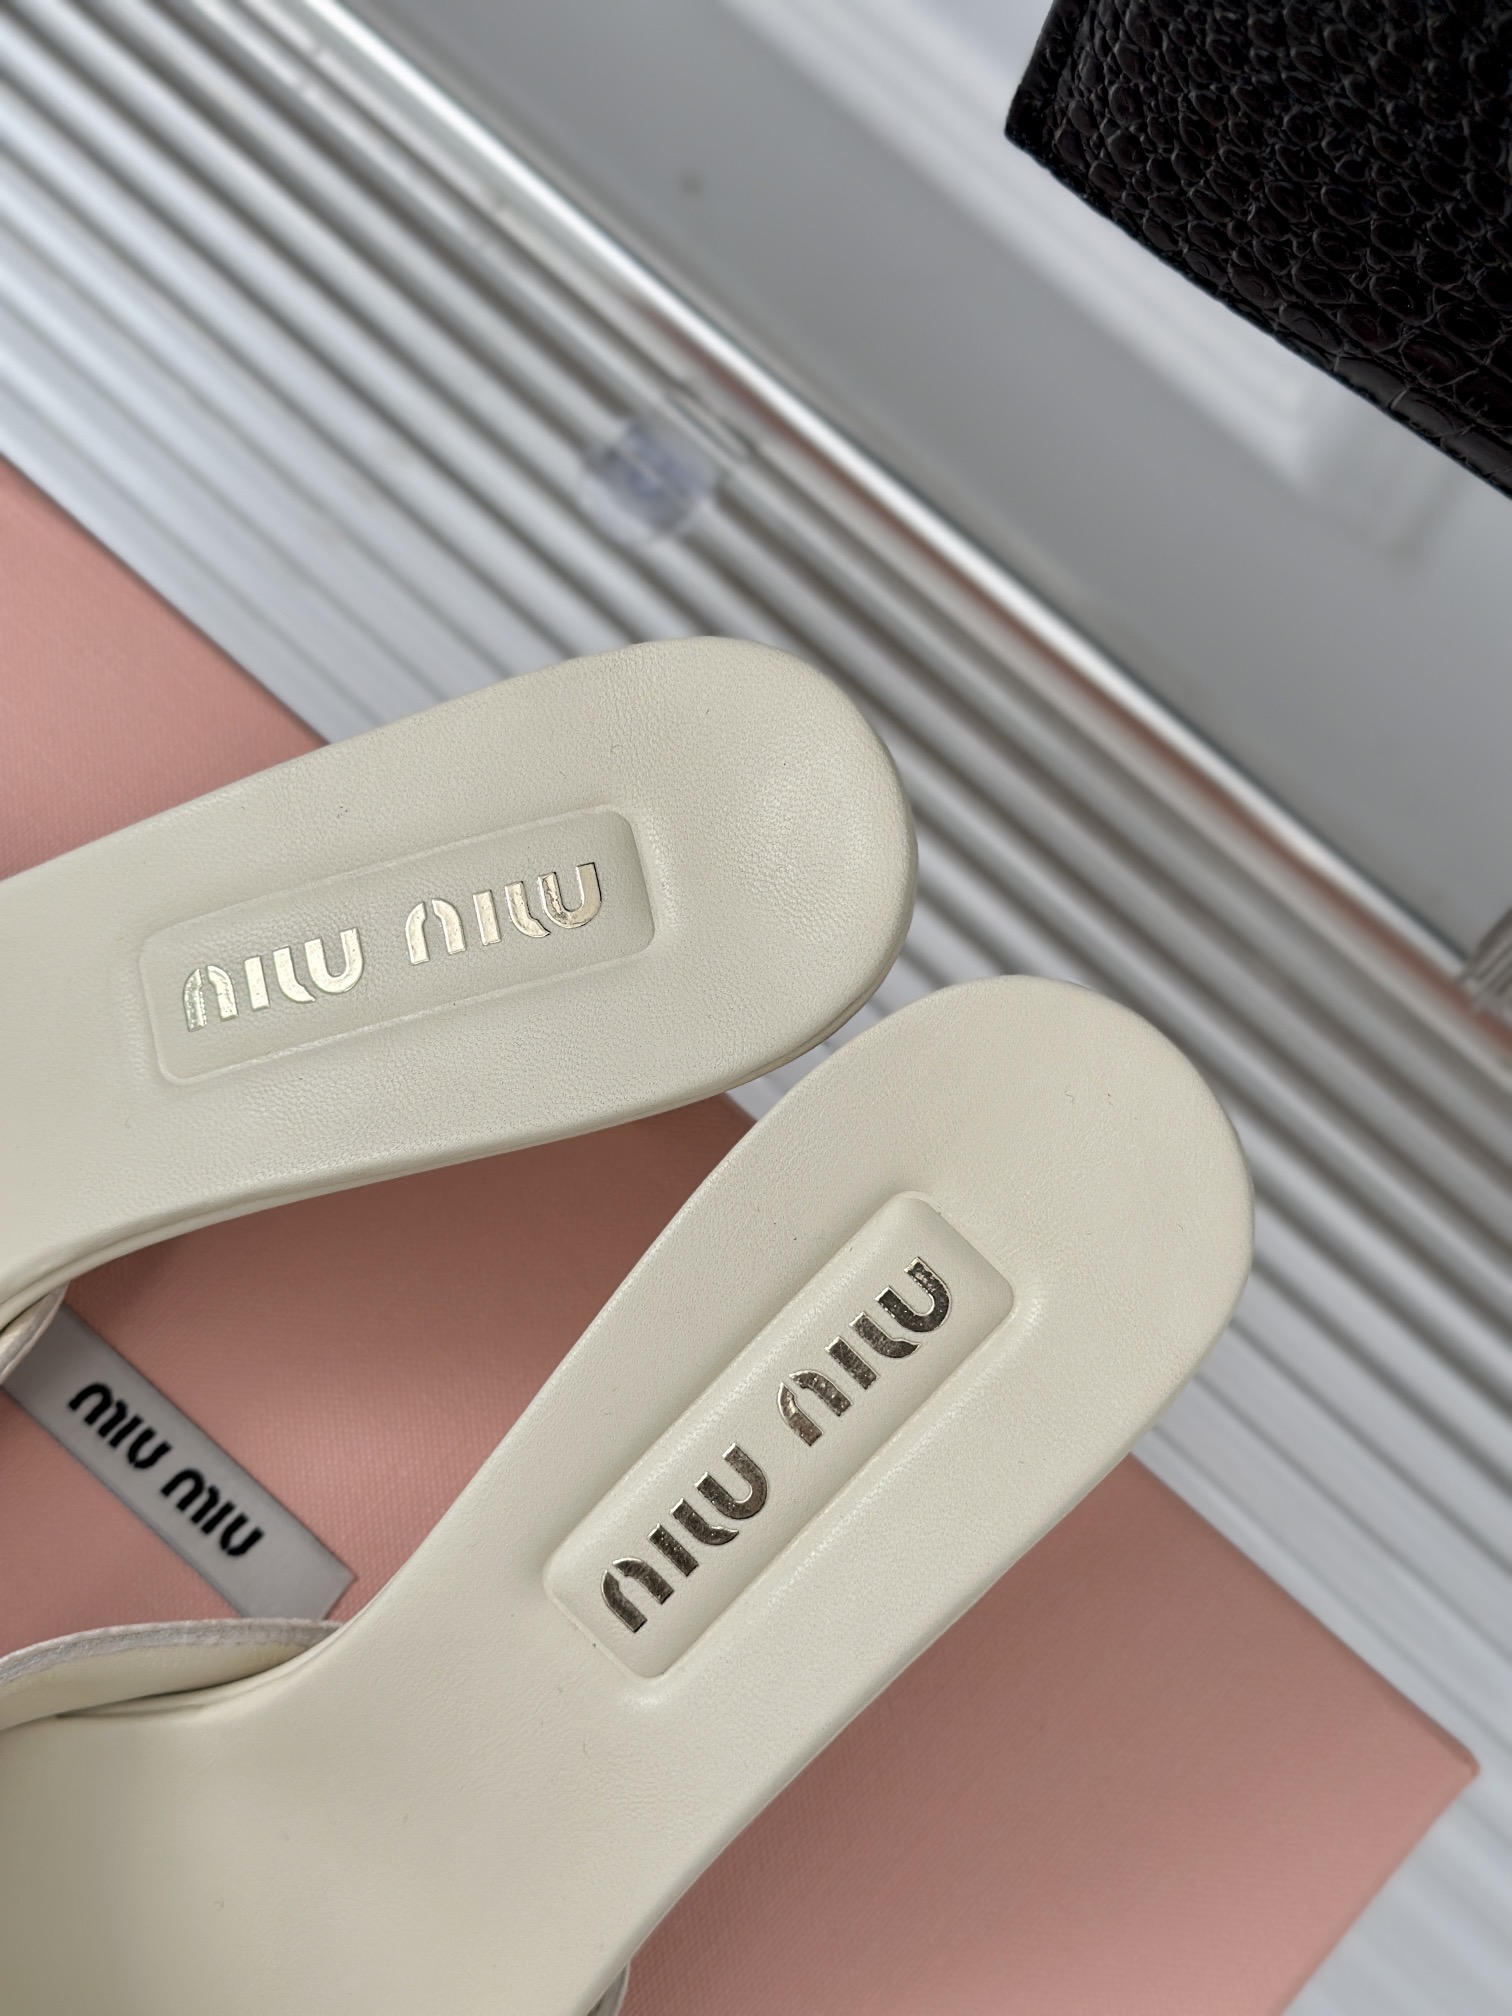 MIUMIU24新品经典花朵高跟拖鞋鞋面采用进口真丝内里垫脚均为羊皮意大利进口牛皮大底跟高7.5cm码数